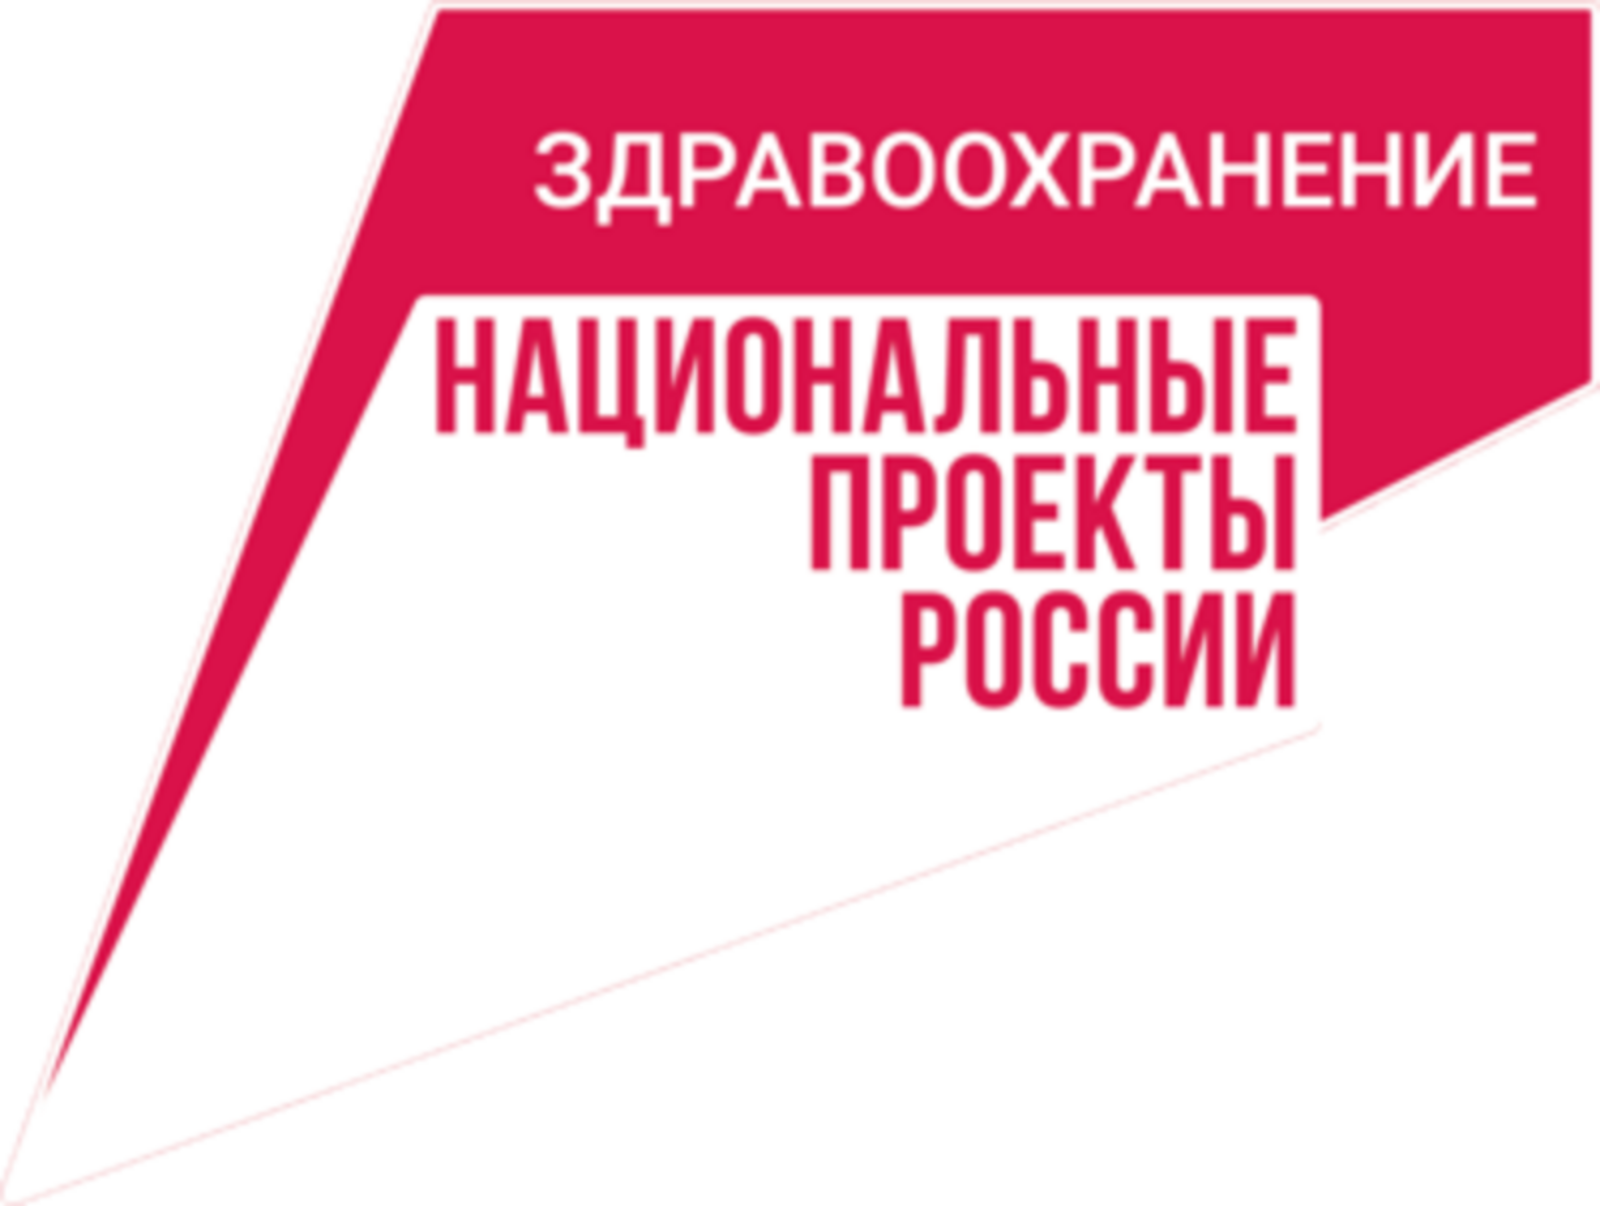 Башкортостан - лидер по цифровизации здравоохранения среди субъектов РФ